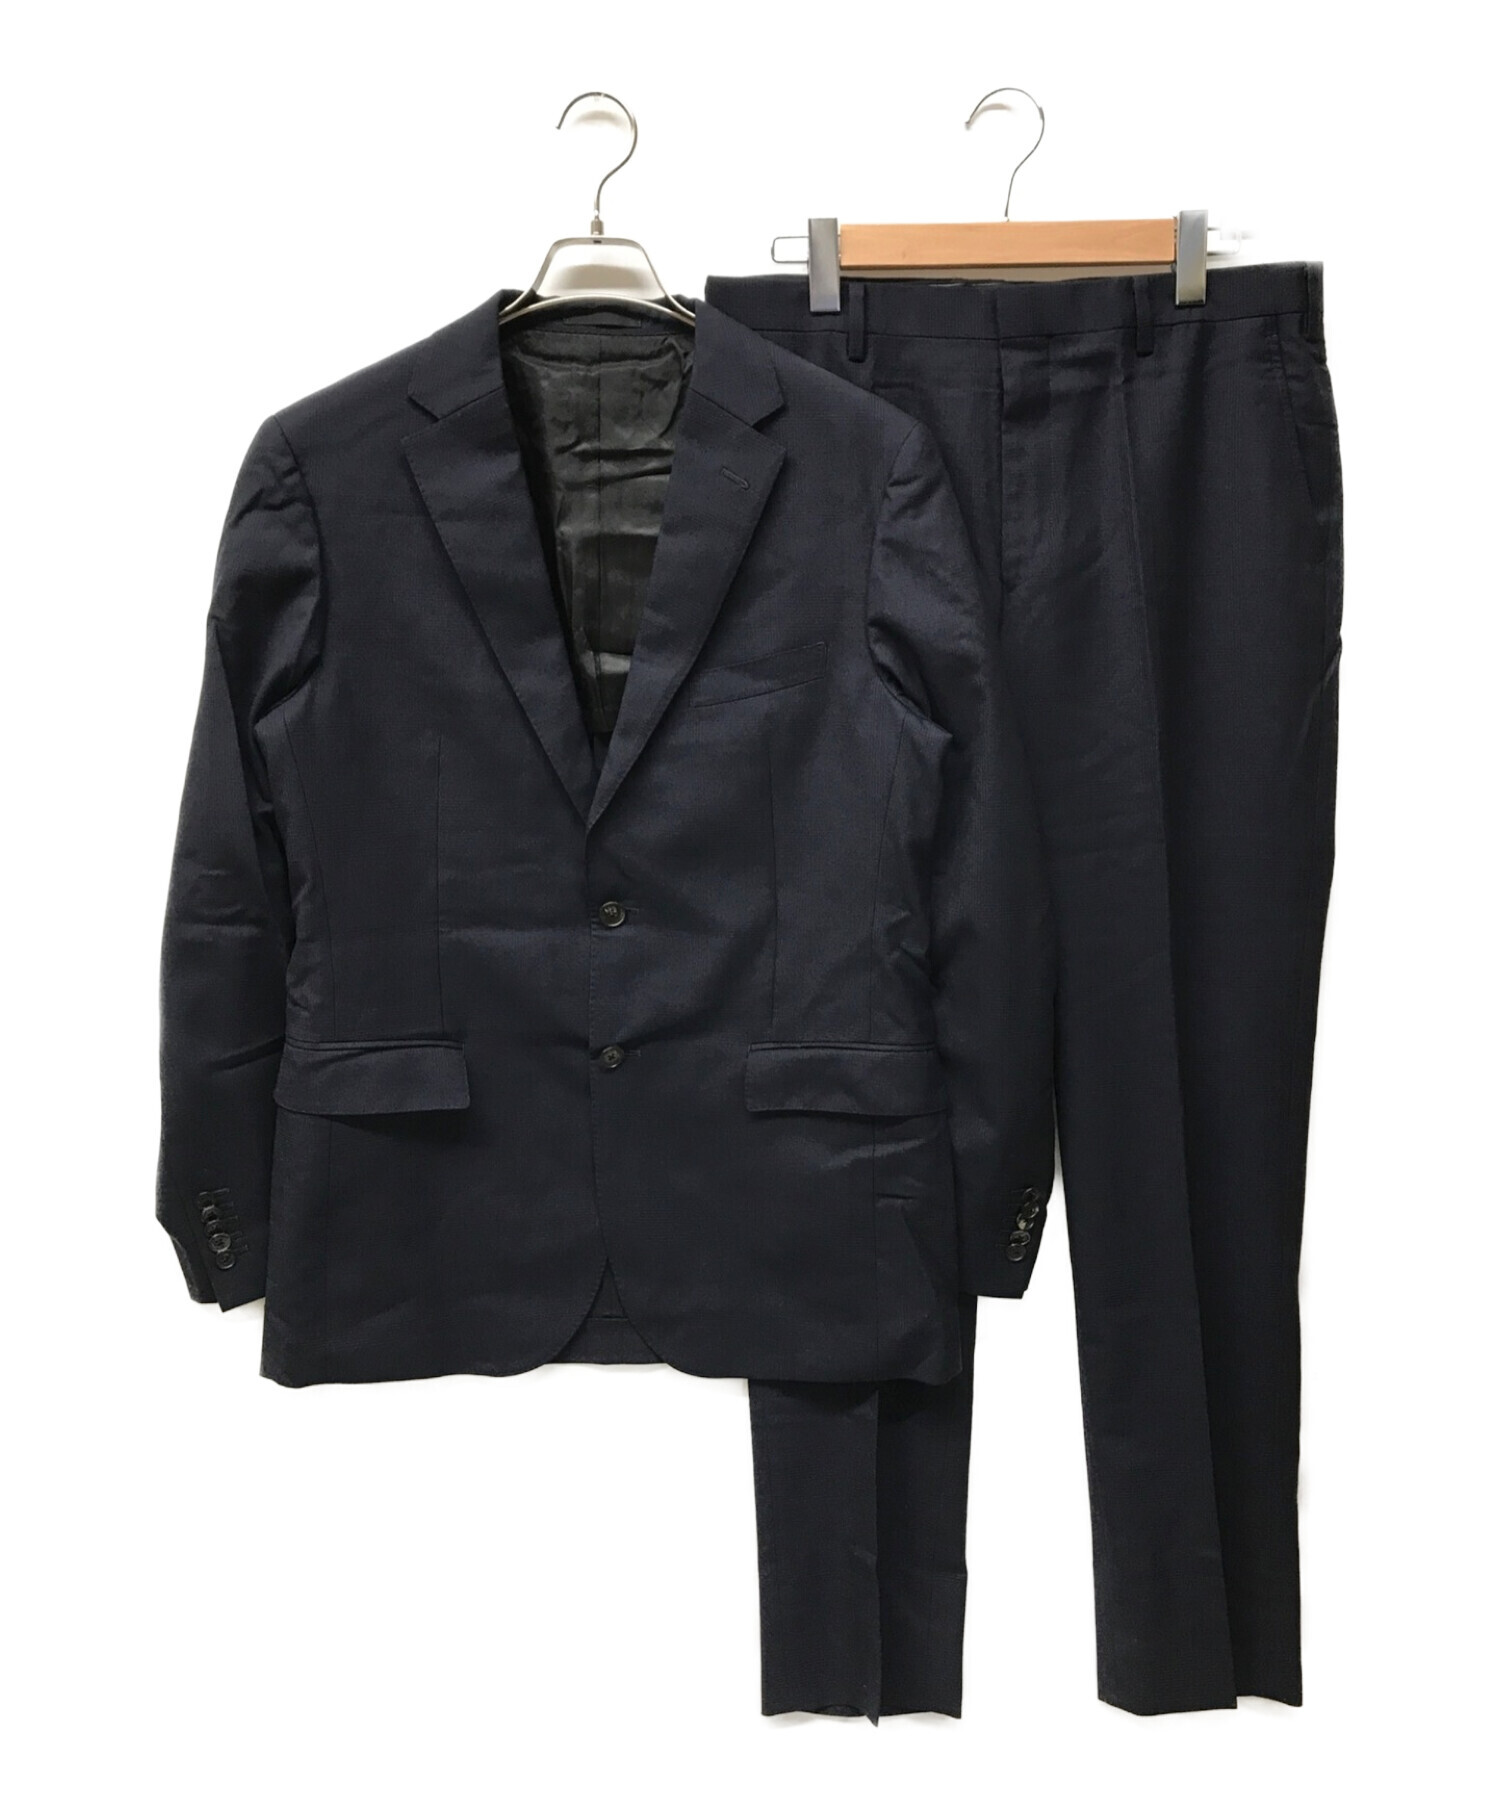 ブラックレーベル クレストブリッジ BLACK LABEL CRESTBRIDGE セットアップ スーツ ジャケット スラックス メンズ 92-76-170 38R(M相当) ネイビー